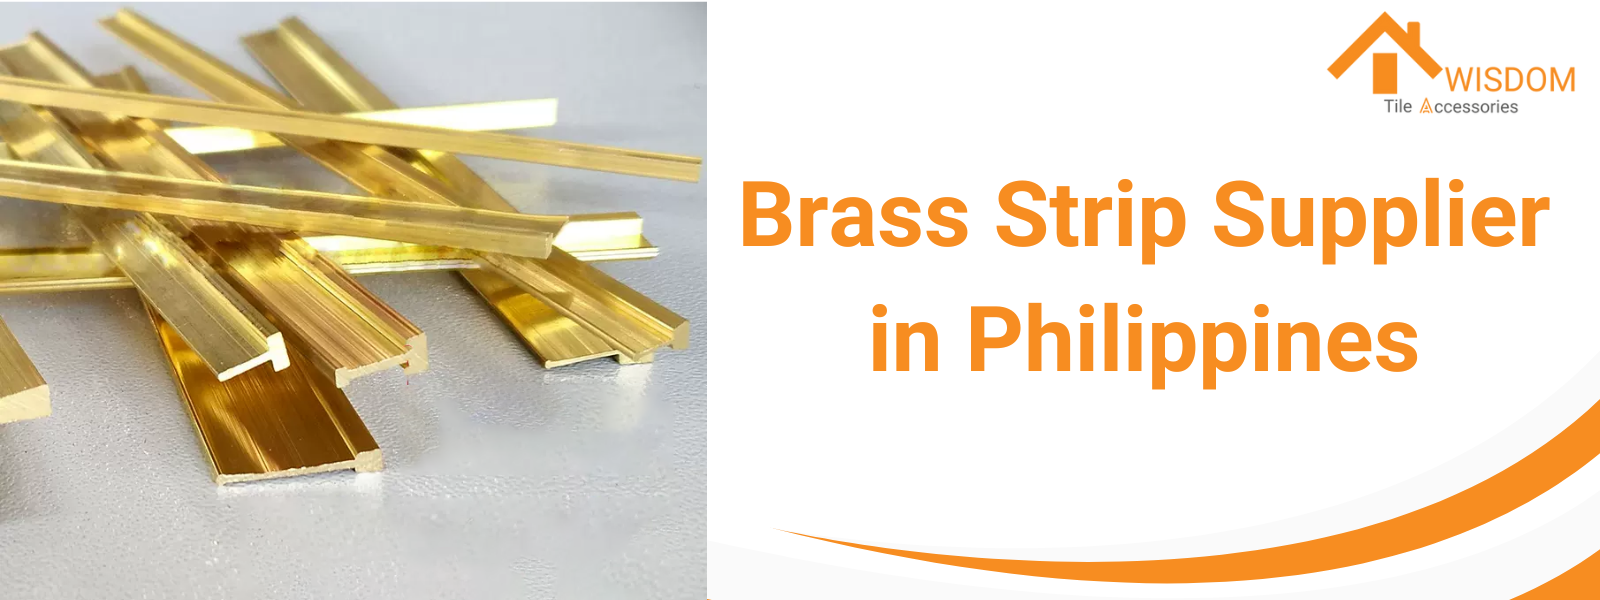 Brass Strip Supplier Philippines